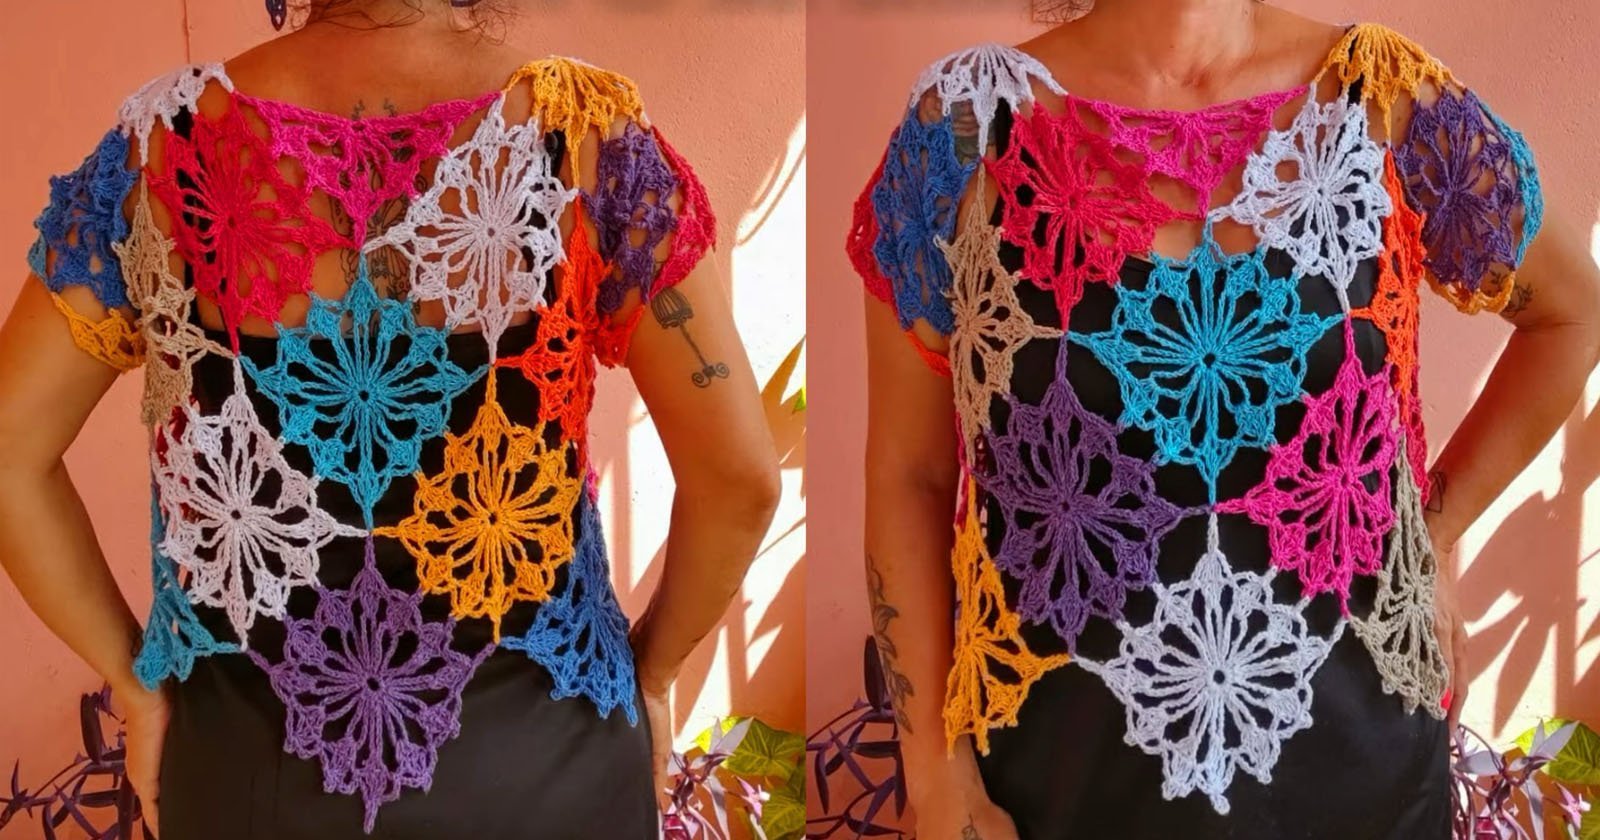 Presente artesanal para Dia das Mães: blusinha de crochê com bordados alegres e personalizados